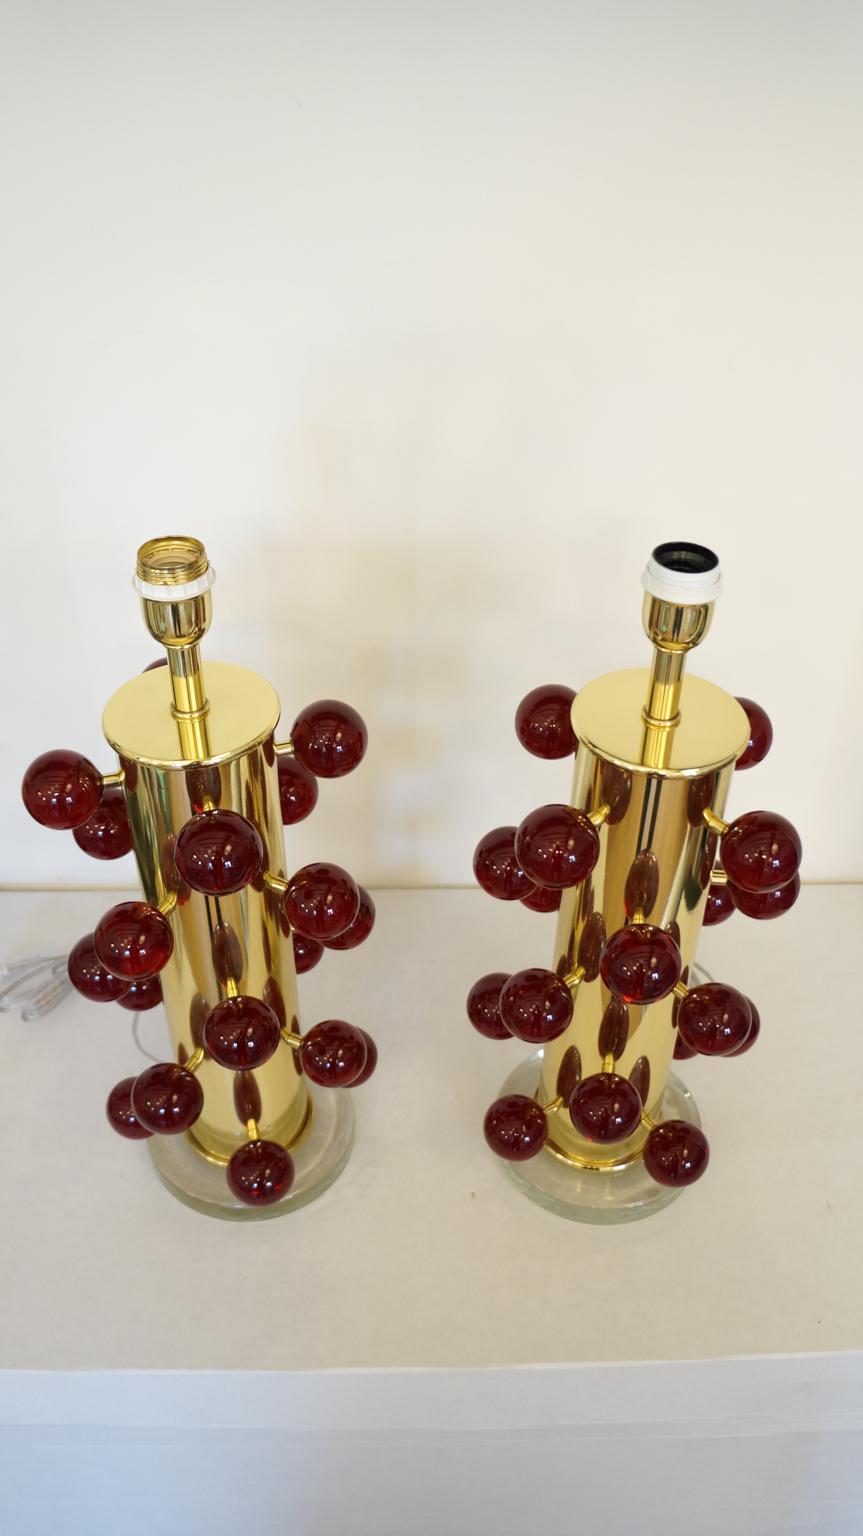 Paire exclusive de lampes de table en verre de Murano avec des sphères rouges Pulegoso, une base en cristal transparent et un cadre en chrome doré. 
Pulegoso traitement sont des bulles à l'intérieur de la couleur.
Lampe fabriquée avec beaucoup de